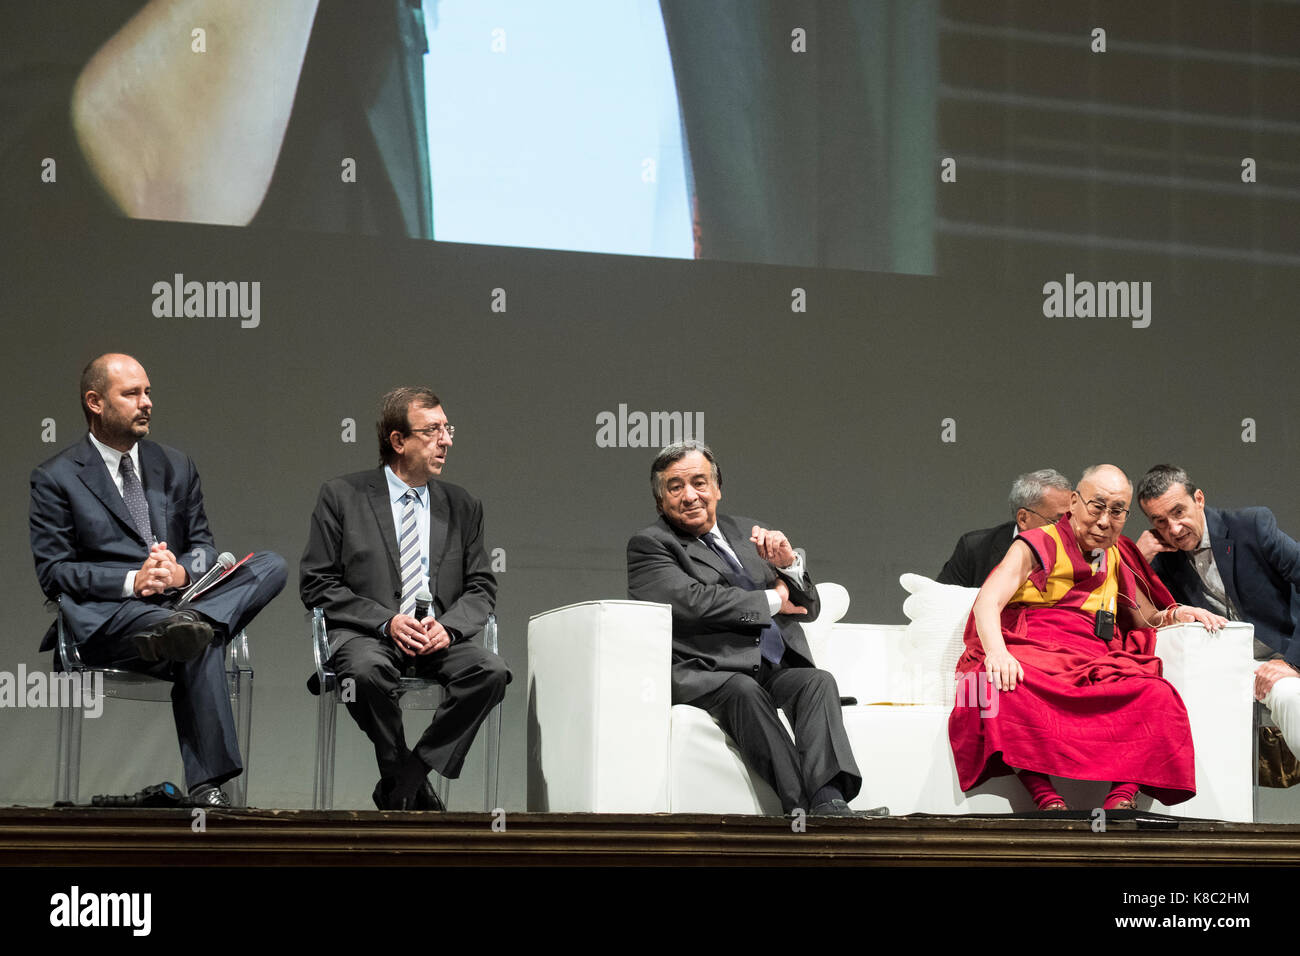 Palerme, Italie. 18 sep, 2017. La conférence de Palerme dans le XIV Dalaï-lama Tenzin Gyatso. xiv dalaï-lama Tenzin Gyatso revient à Palerme. joie comme une inspiration pour invoquer la paix. Après plus de vingt ans, 14e dalaï-lama Tenzin Gyatso, chef spirituel du Tibet et prix Nobel de la paix, revient à la ville de Palerme. crédit : gianfranco spatola/pacific press/Alamy live news Banque D'Images